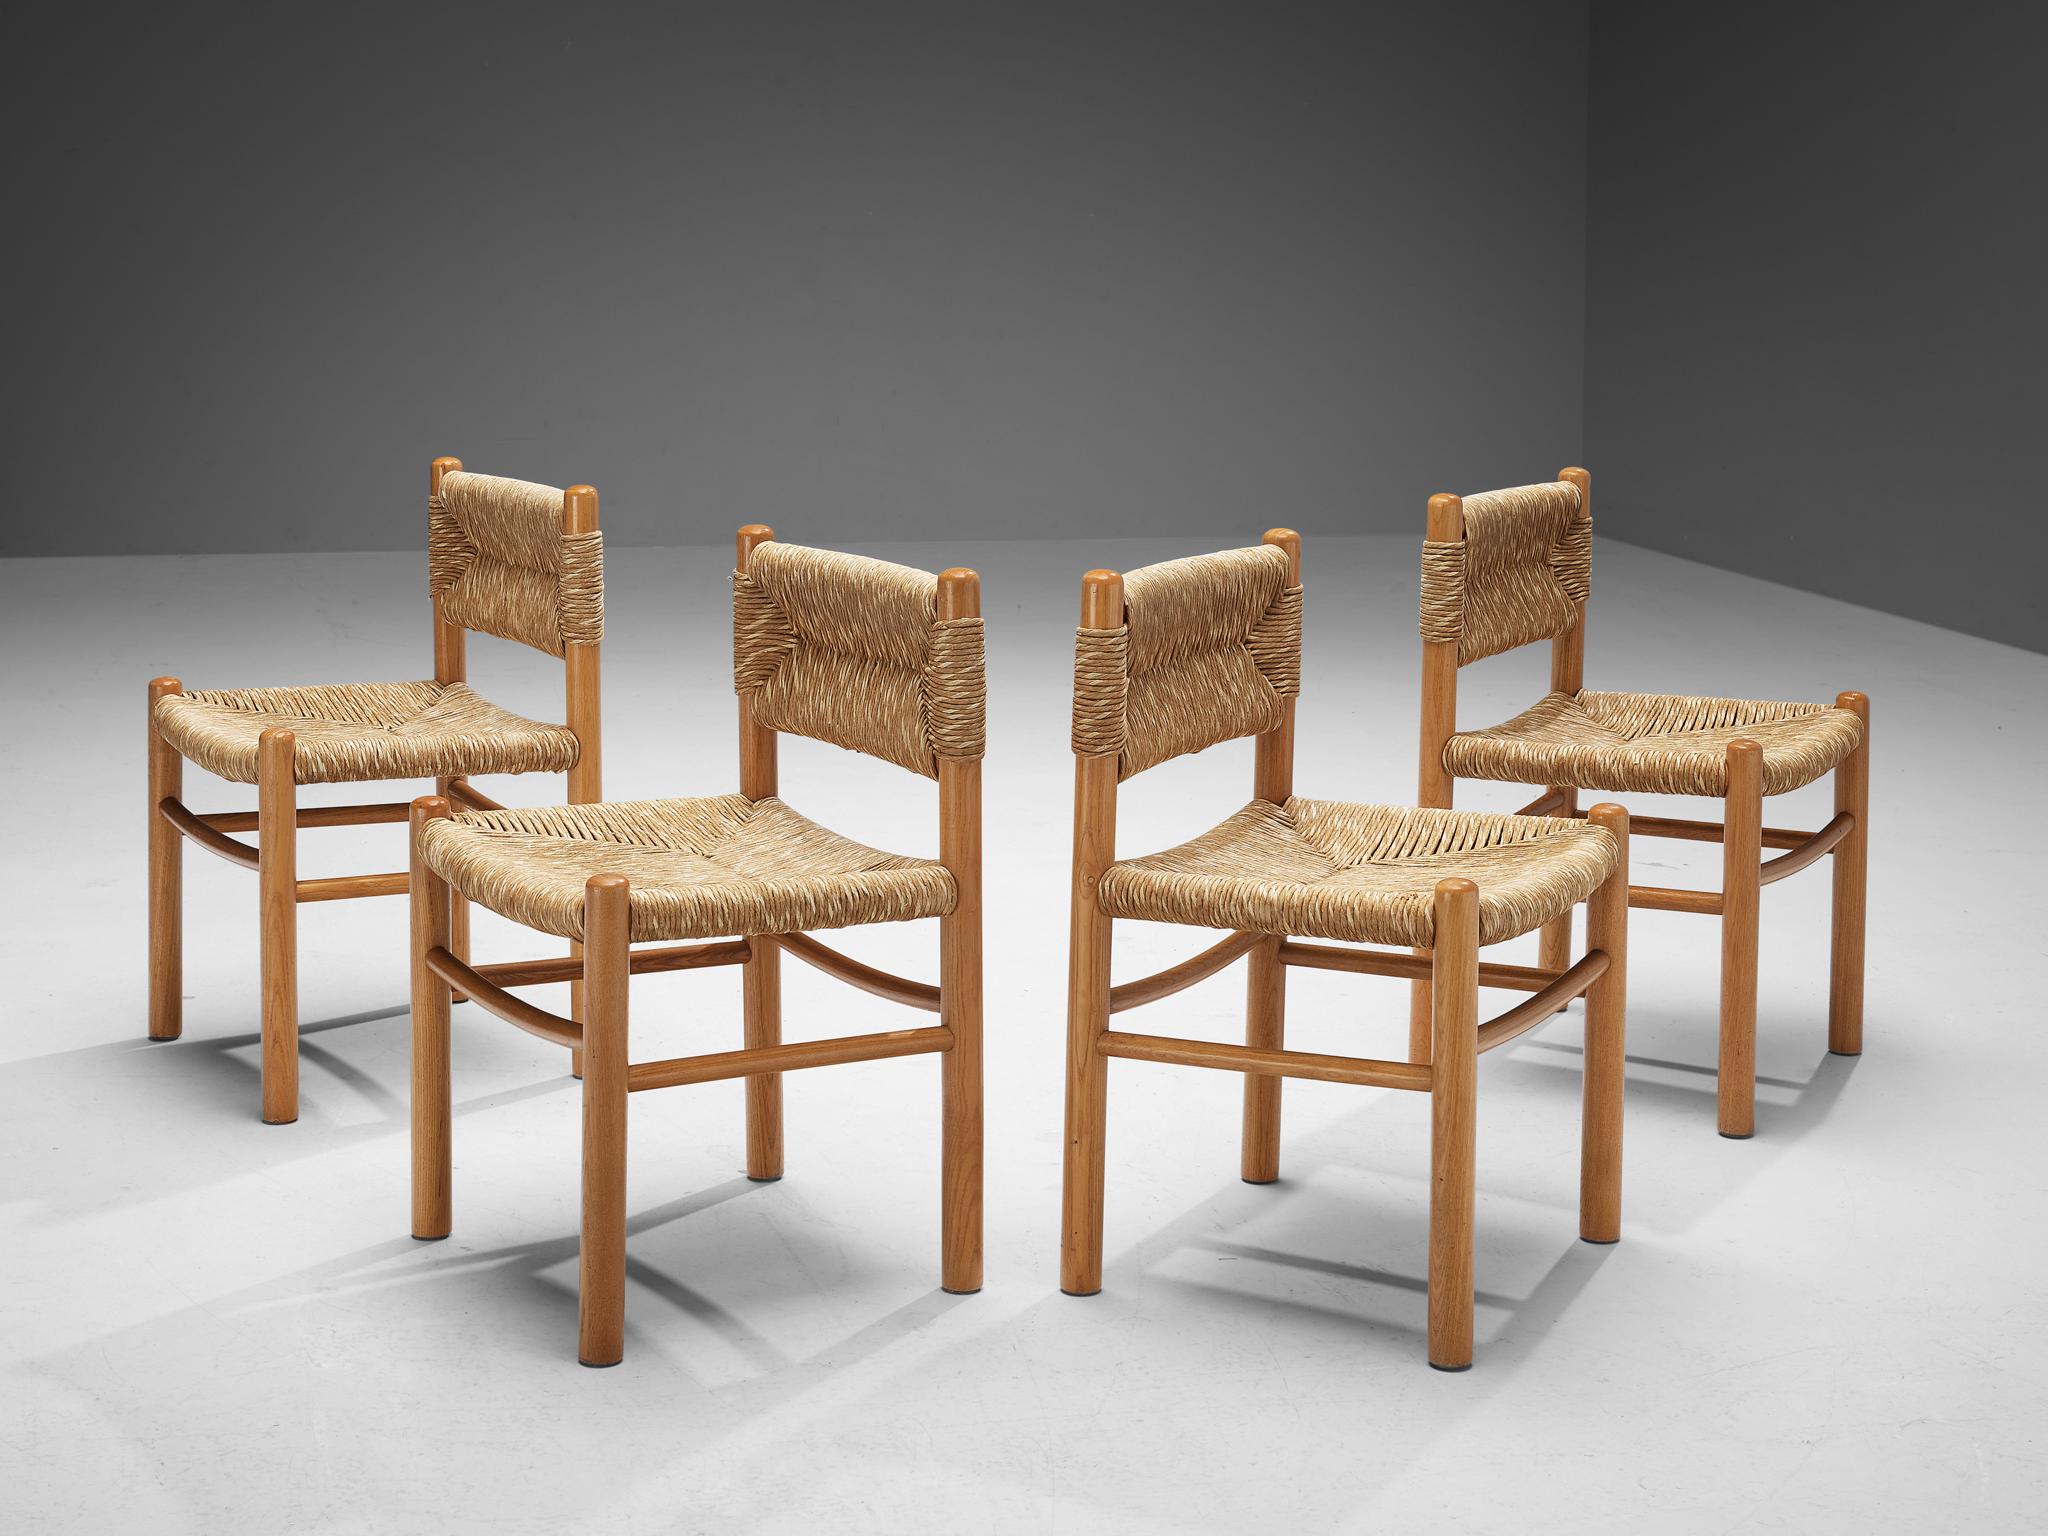 Satz von vier Esszimmerstühlen, Esche, Stroh, Frankreich, 1960er Jahre.

Dieses Set aus vier Esszimmerstühlen besteht aus einem massiven Holzrahmen mit zylindrischen, dicken Beinen, die mit eleganten, schlanken, horizontalen Latten miteinander